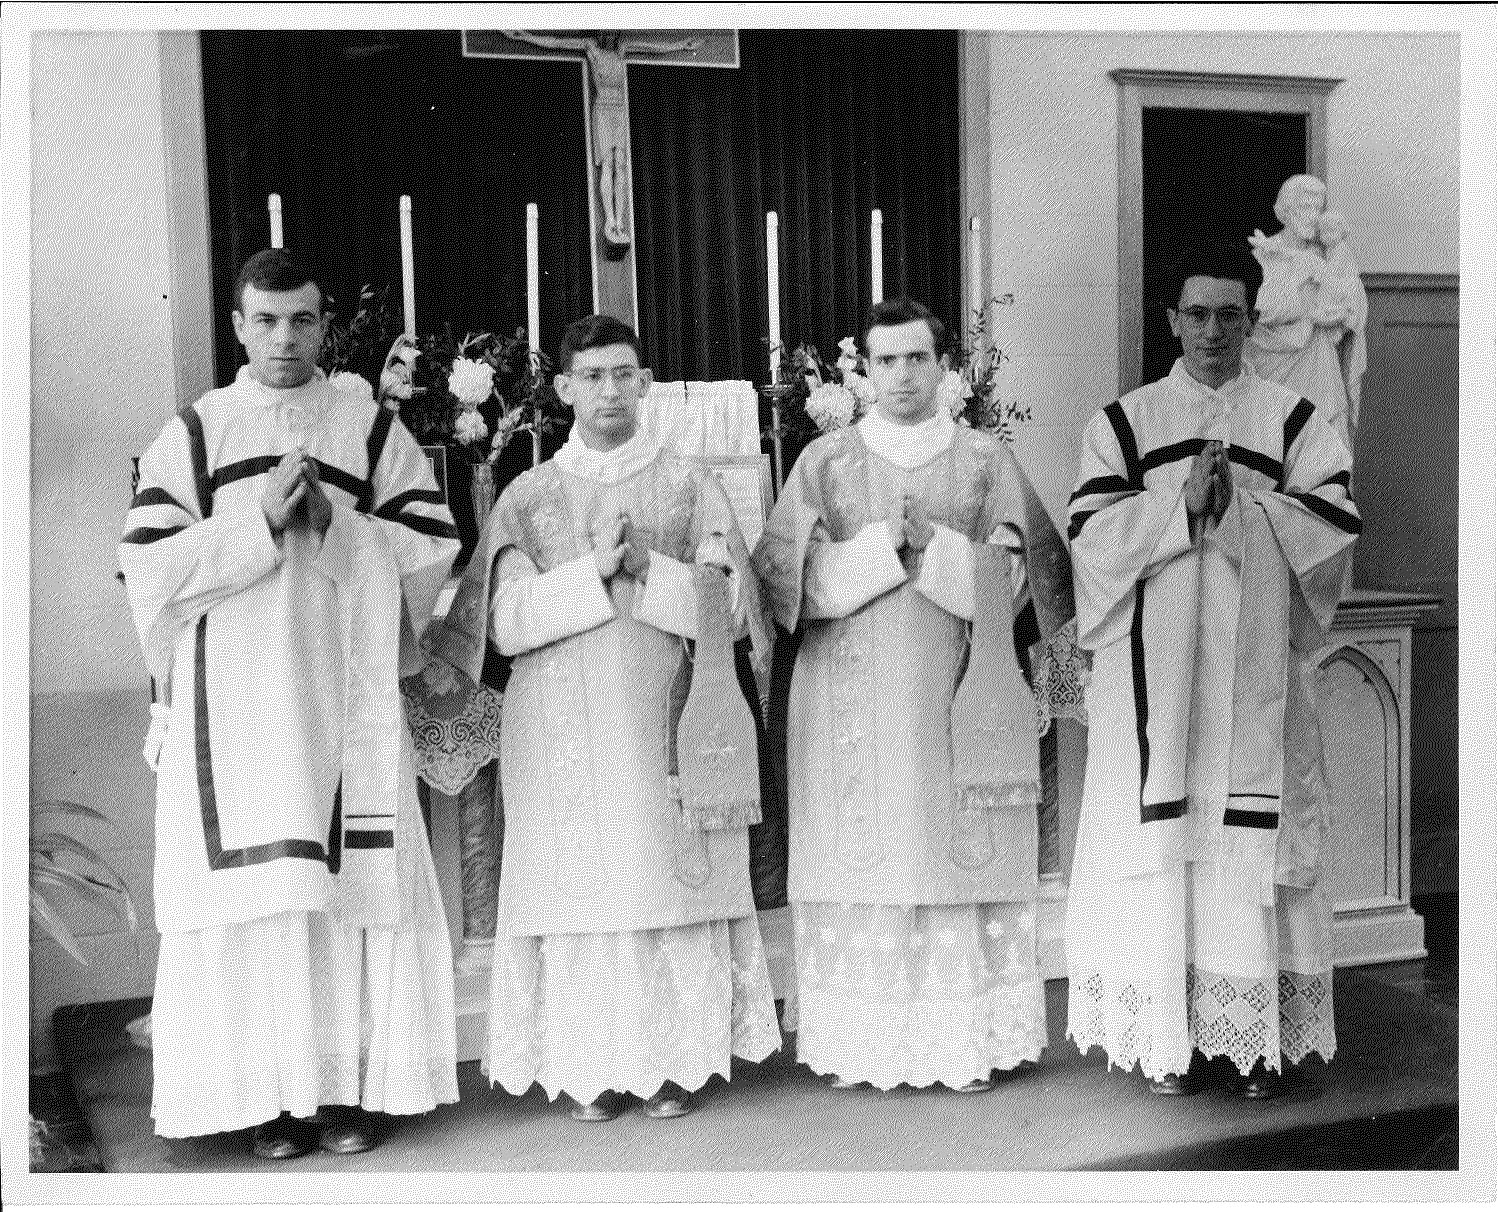 Black and White photo with catholic acolytes holding candles